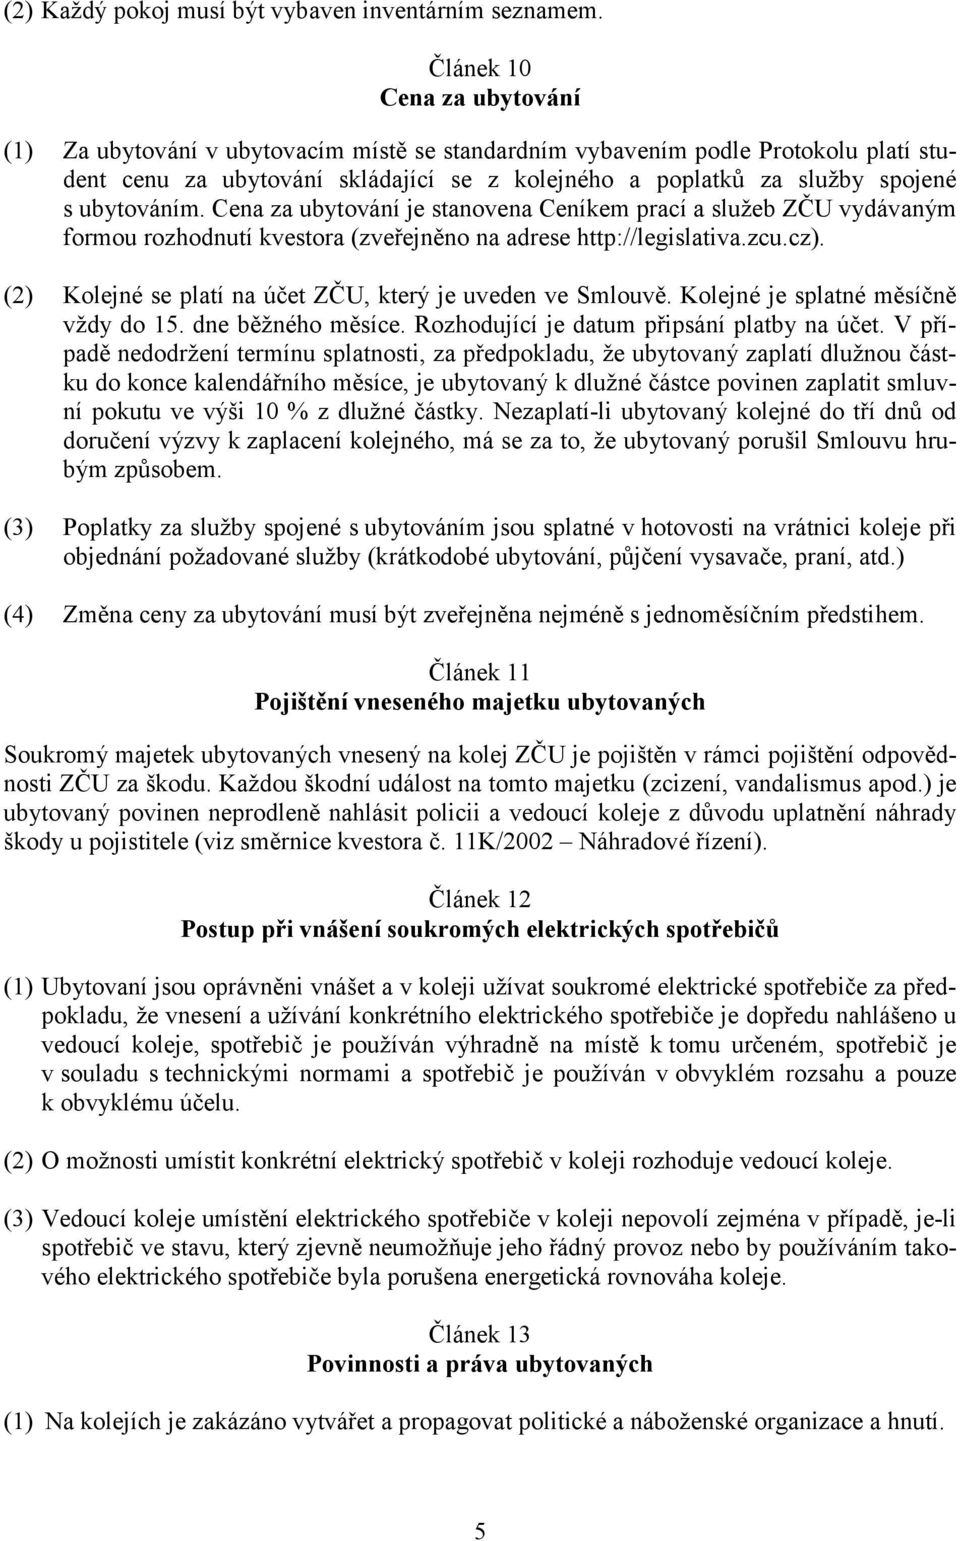 ubytováním. Cena za ubytování je stanovena Ceníkem prací a služeb ZČU vydávaným formou rozhodnutí kvestora (zveřejněno na adrese http://legislativa.zcu.cz).